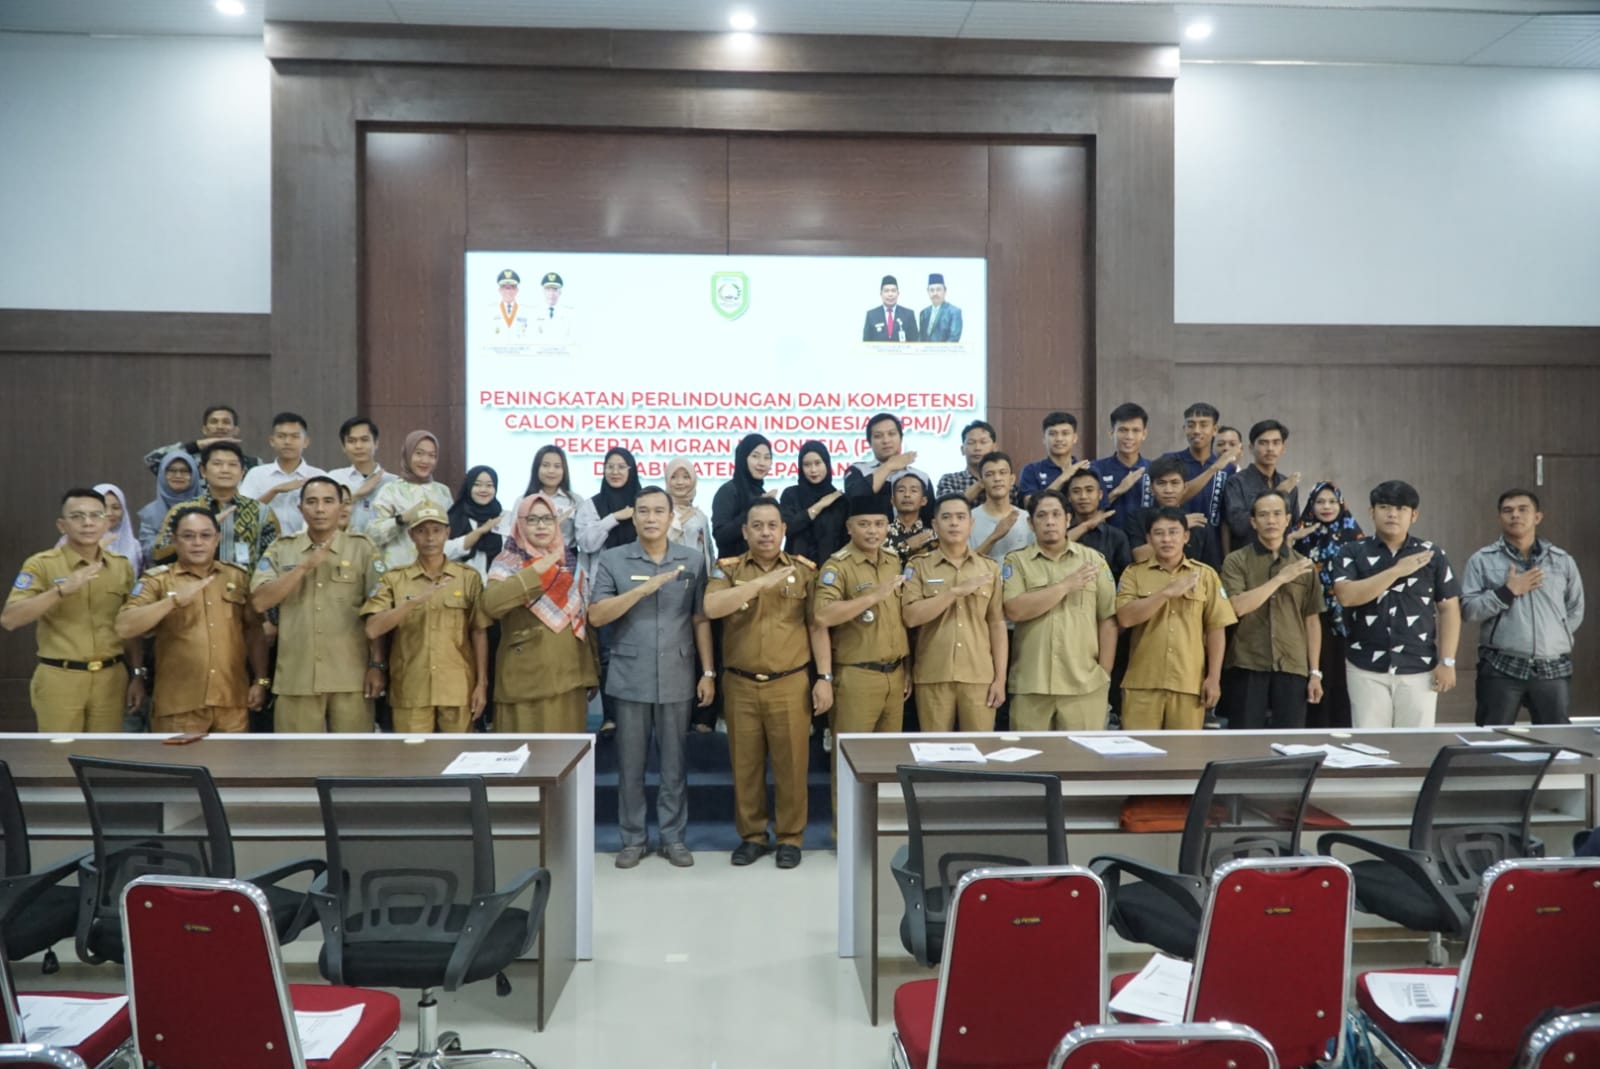 Wabup Buka Sosialiasi Peningkatan Perlindungan dan Kompetensi Calon Pekerja Migran (CPMI)/Pekerja Migran Indonesia (PMI)